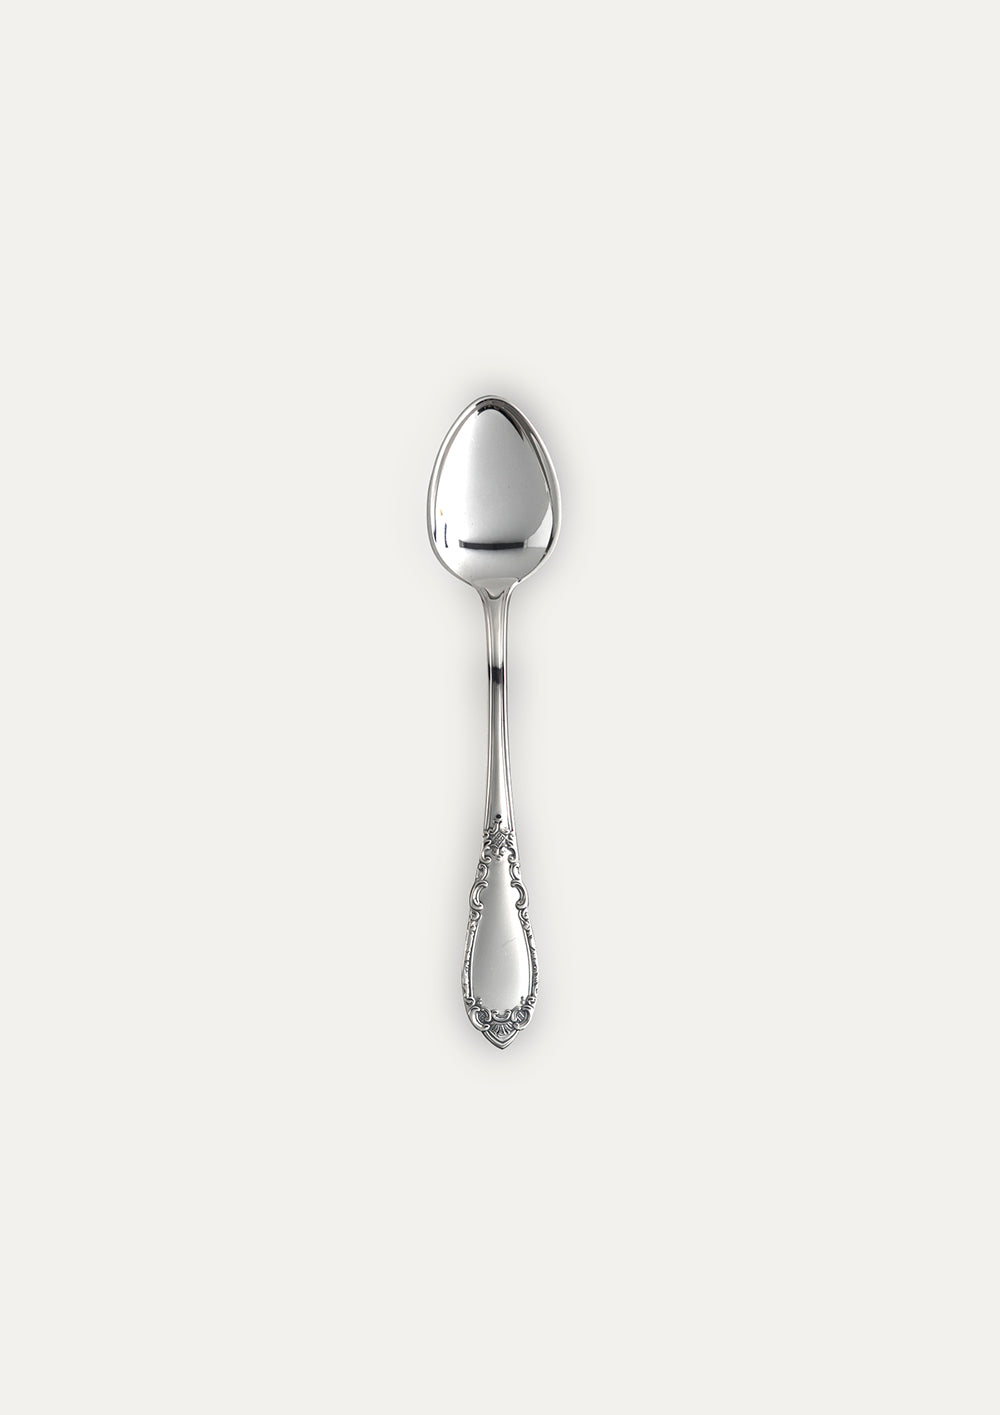 Noble teaspoon